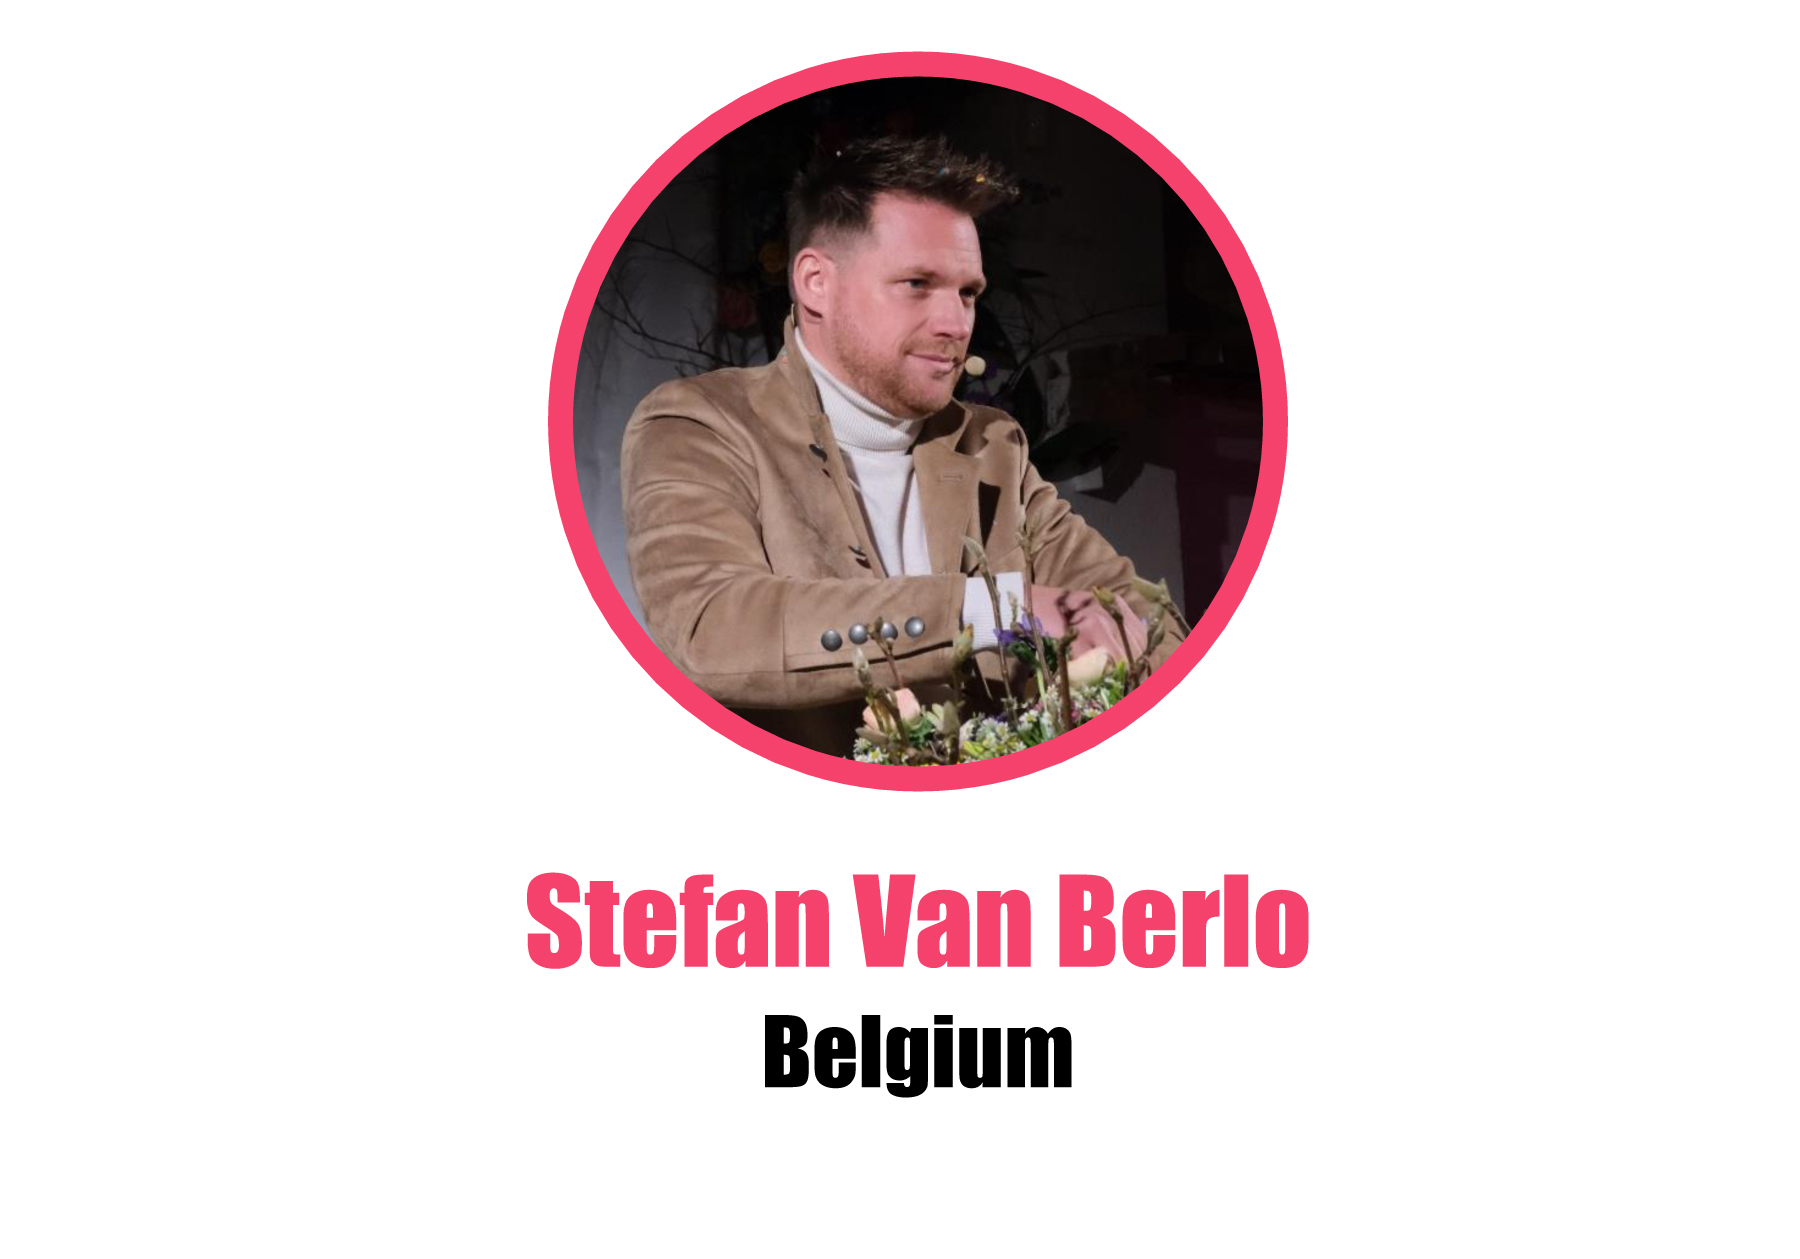 Belgium_Stefan Van Berlo